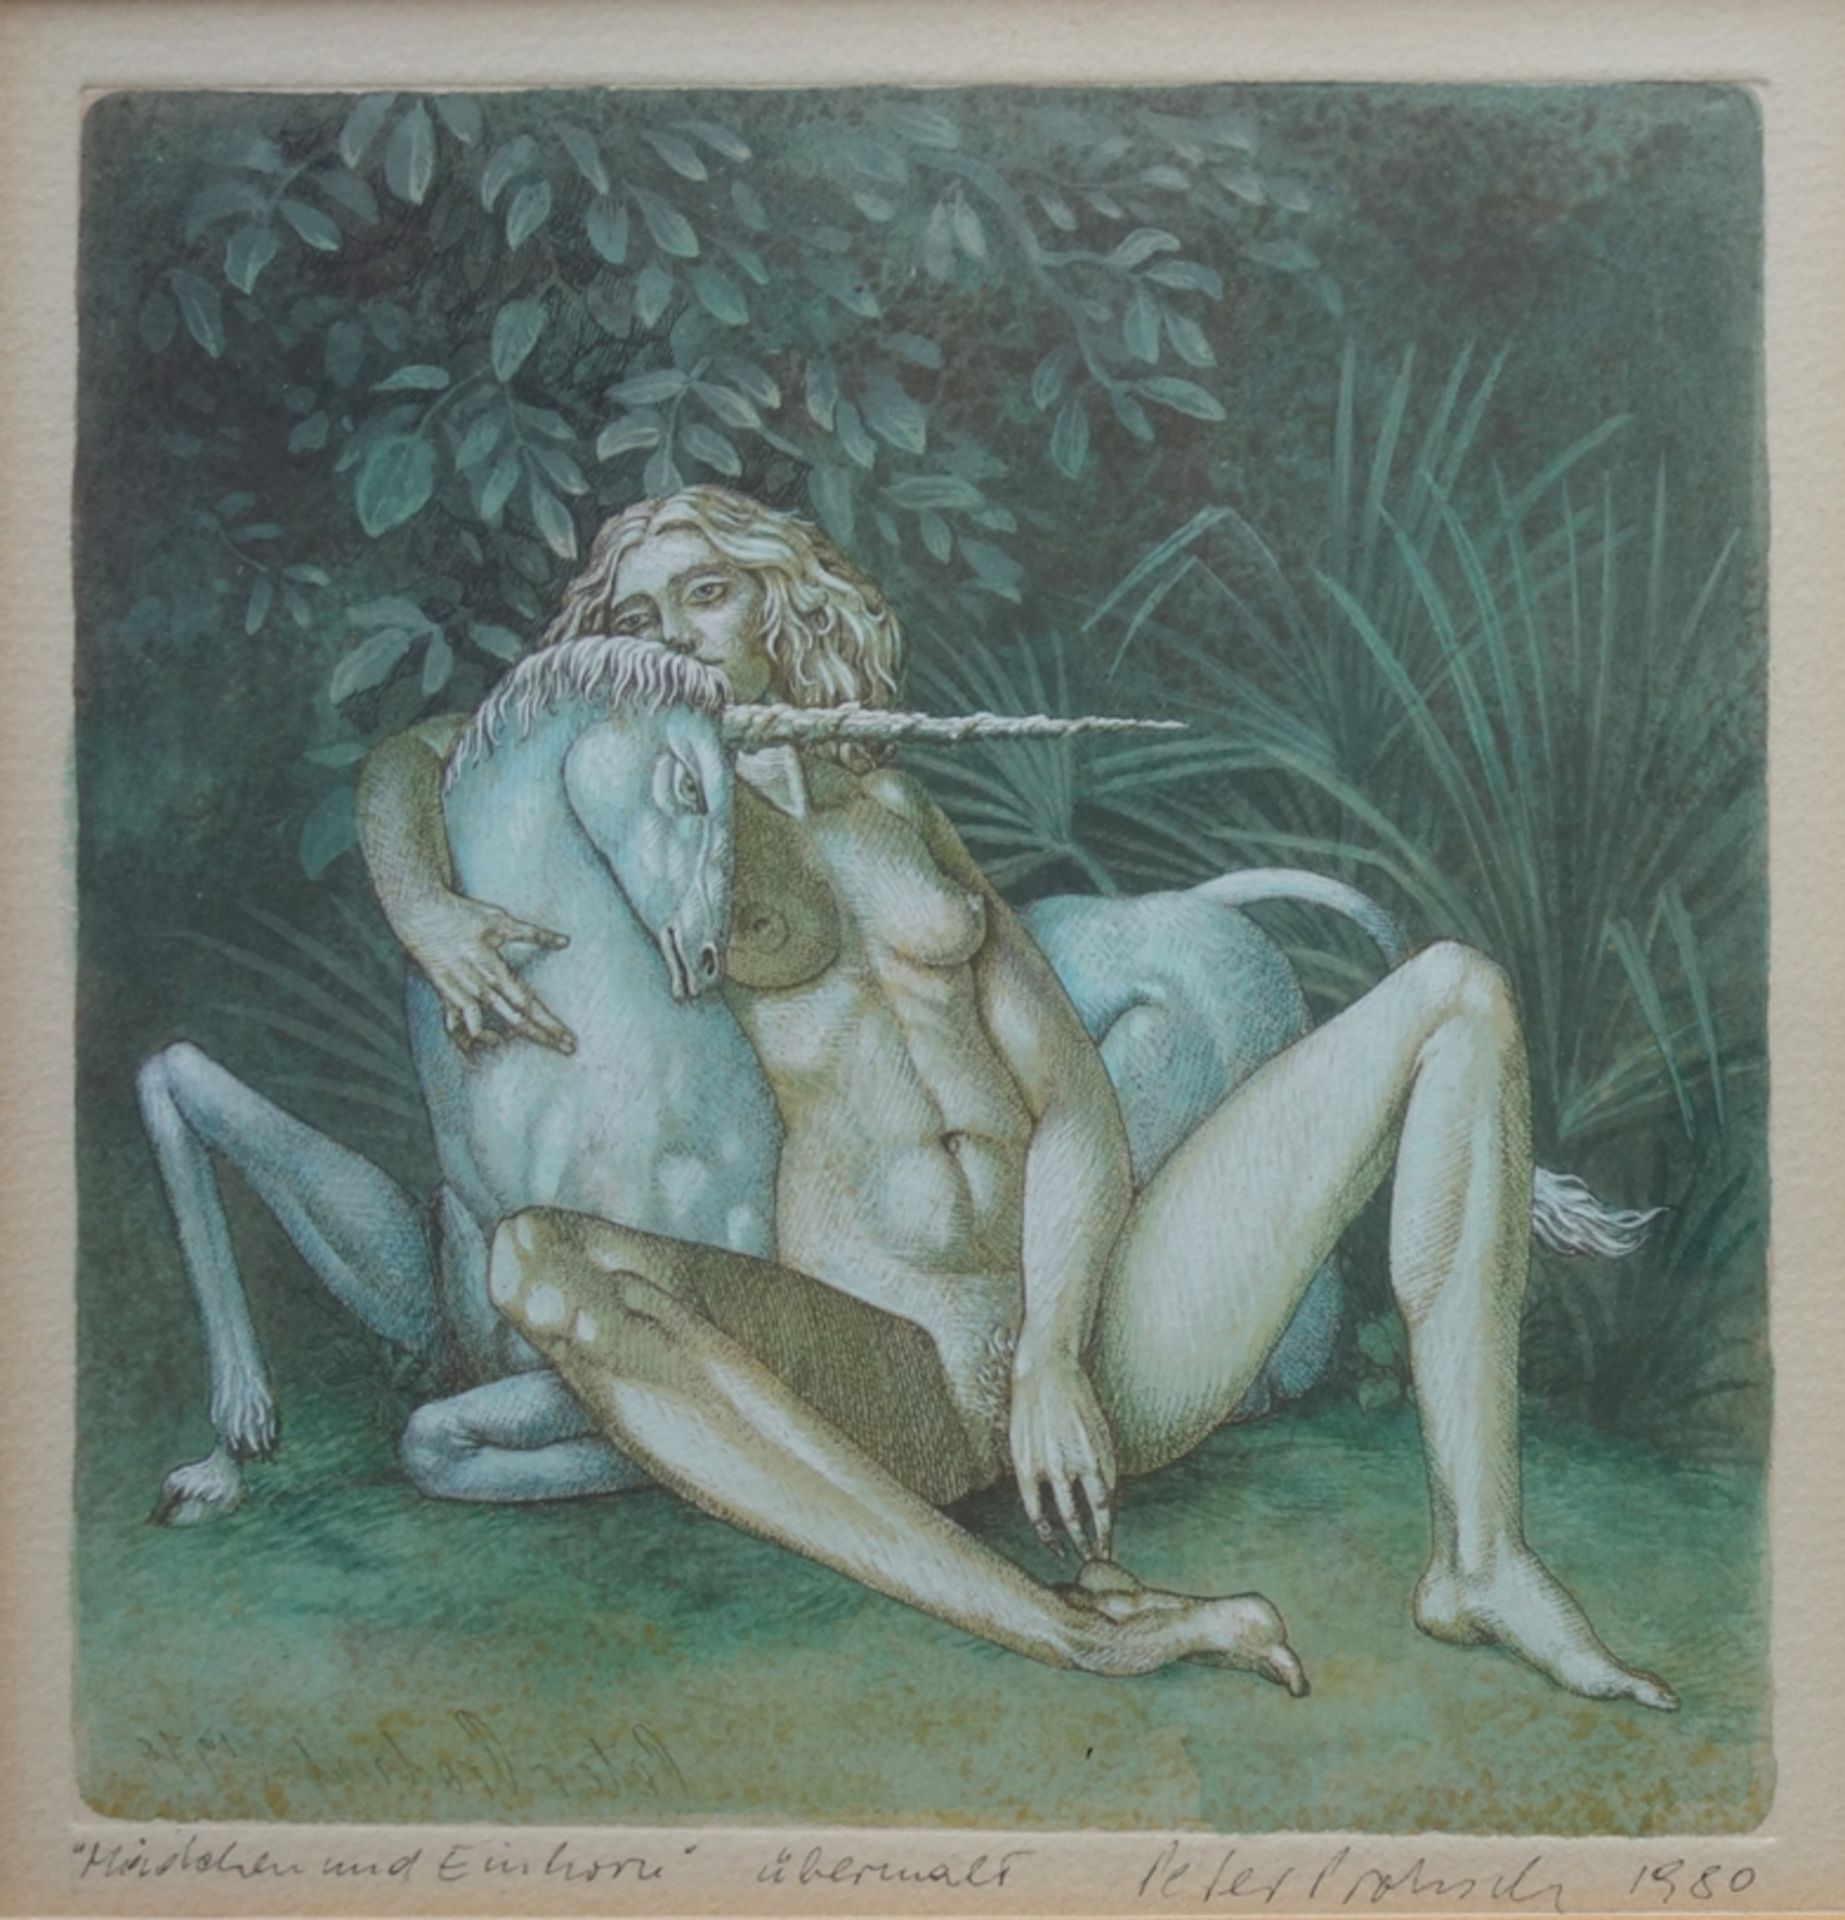 Peter Proksch (1935, Wien - 2012, Wolkersdorf), "Mädchen und Einhorn", 1980, übermalte Radierung